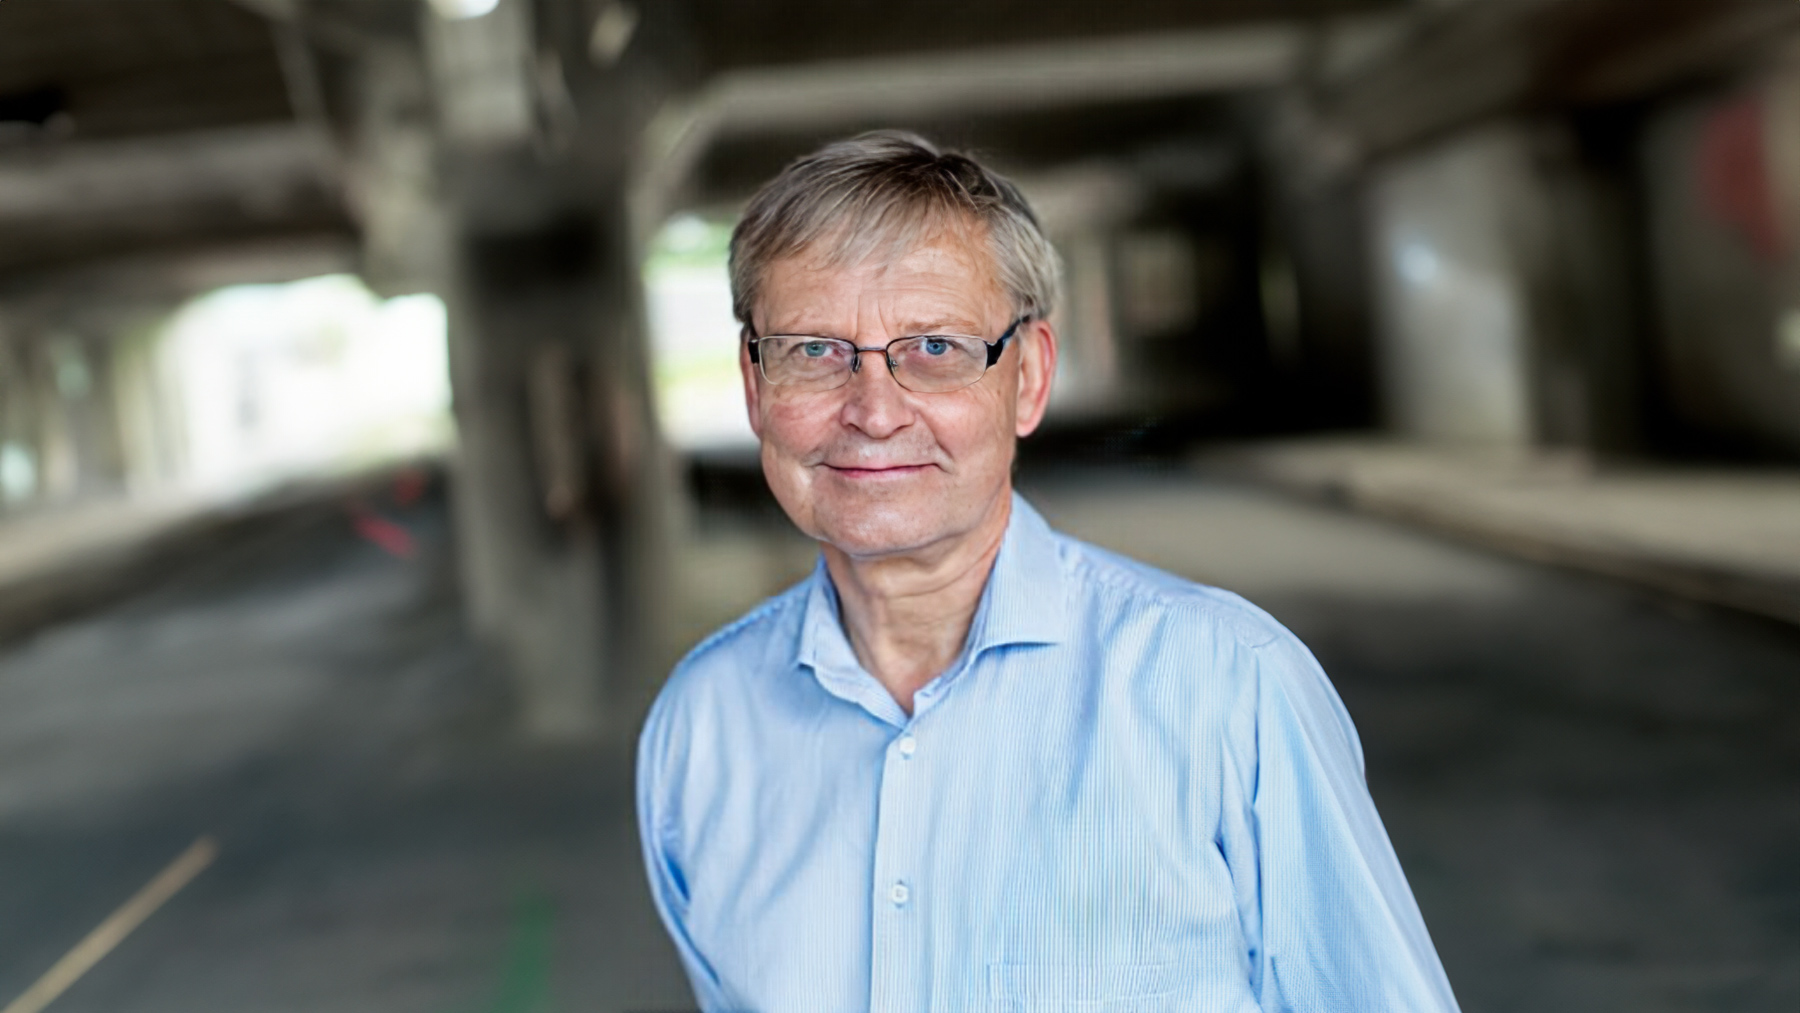 Carl Hendrik-Heldin es un investigador sueco especializado en Oncología. Foto: Universidad de Uppsala (Suecia).